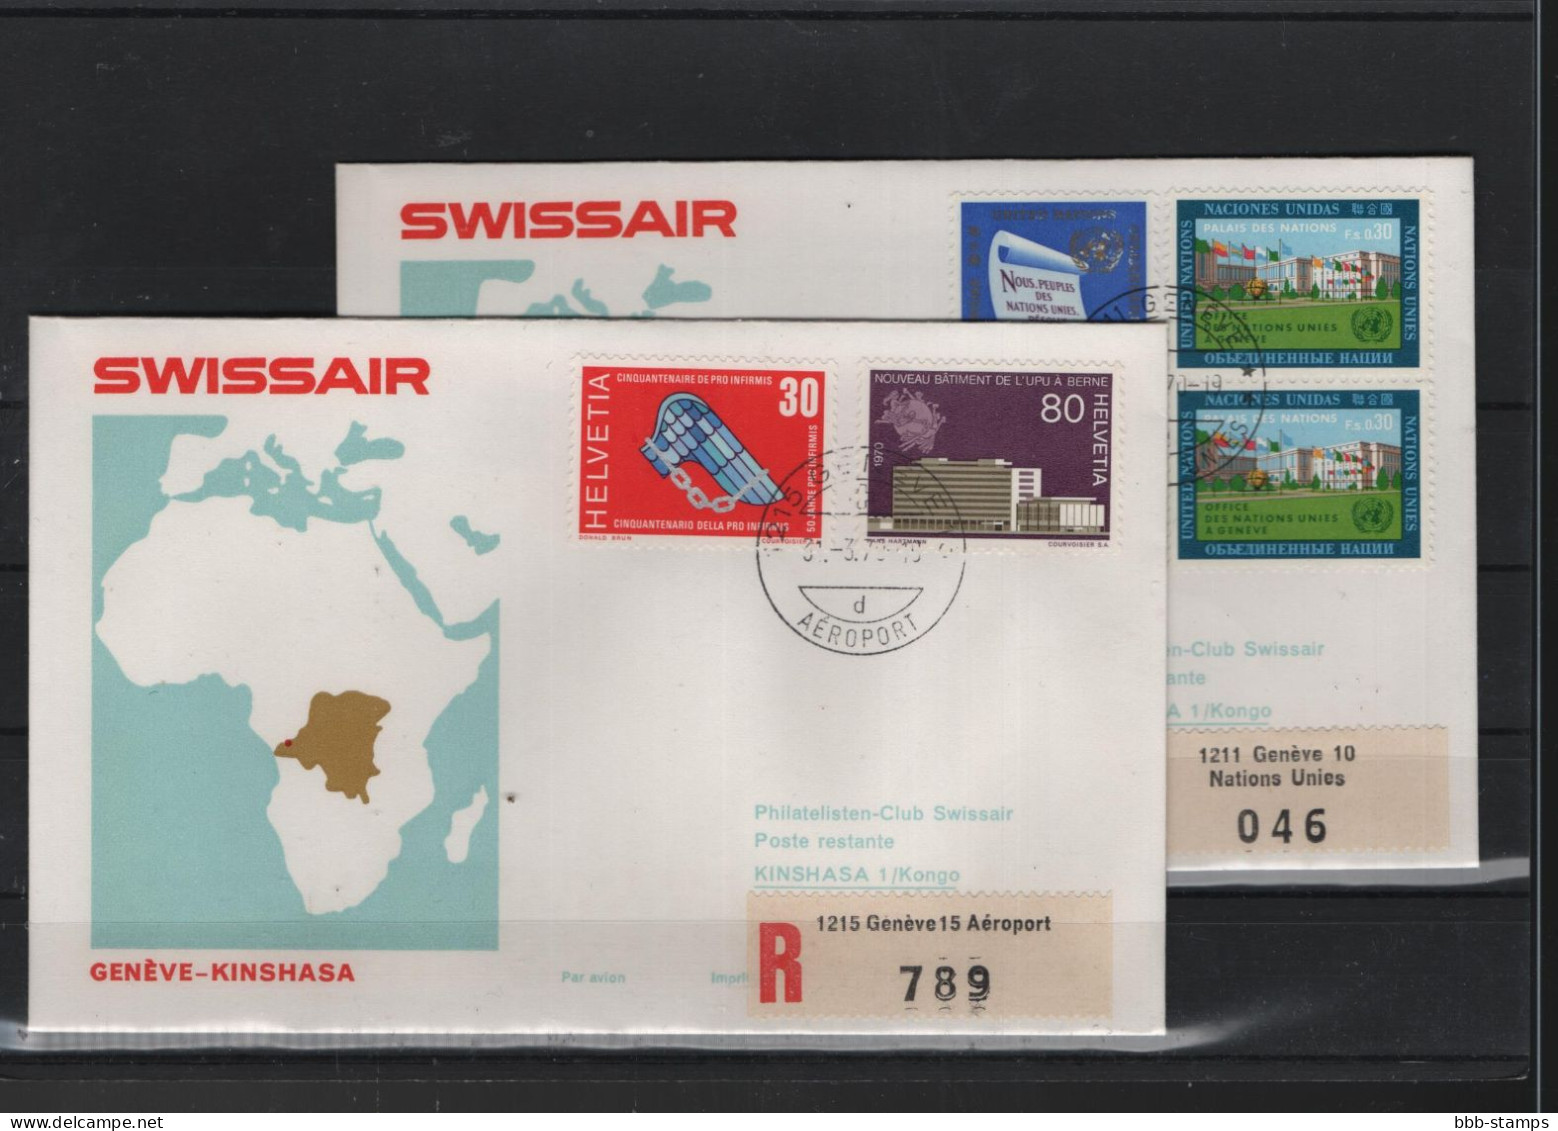 Schweiz Luftpost FFC Swissair 31.3.1970 Zürich - Kinshasa VV - Primi Voli